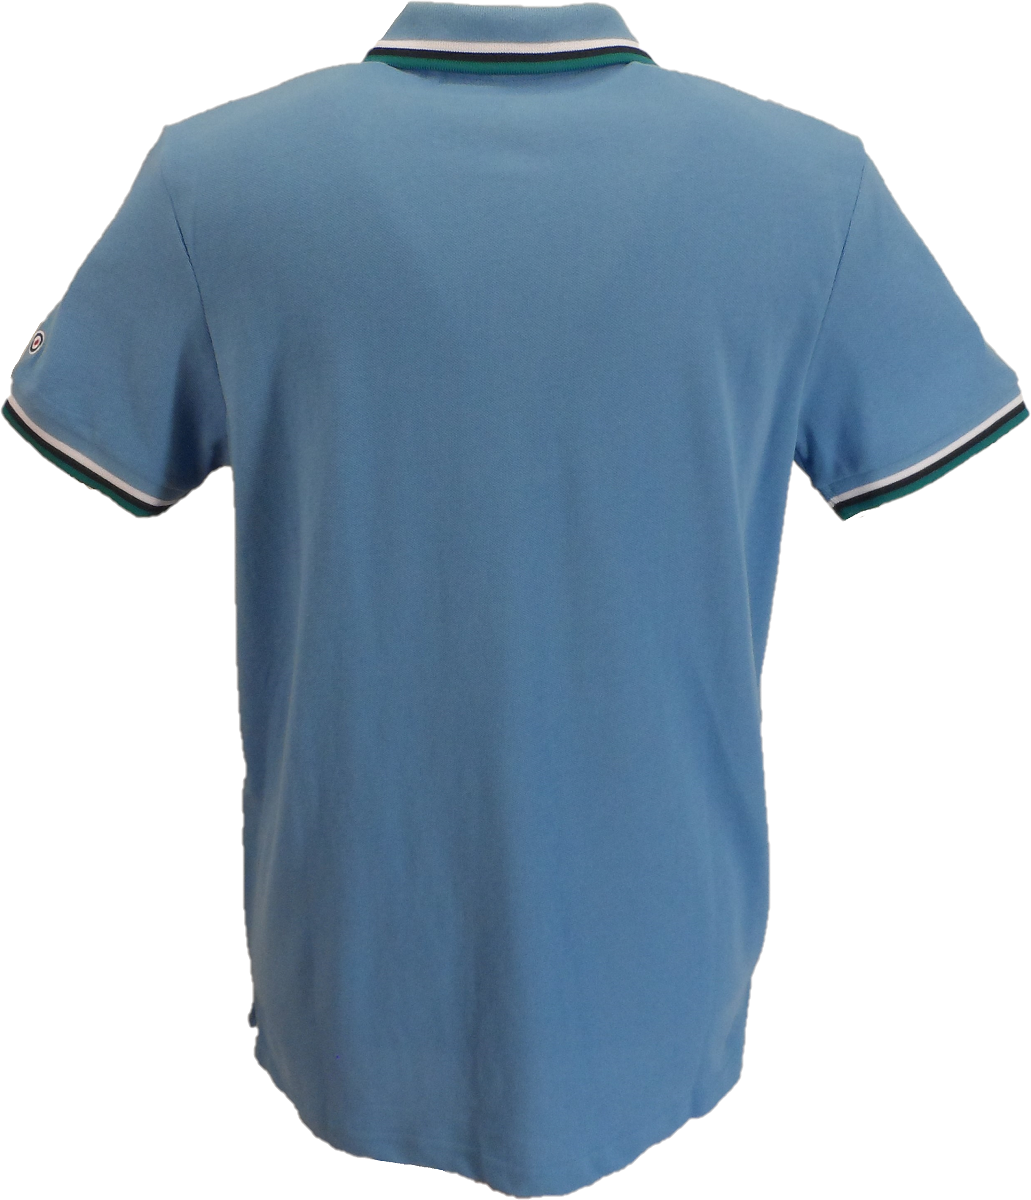 Lambrettaアジュールブルー/ホワイト/ネイビー/ディープレイク レトロターゲットロゴ 綿100% ポロシャツ